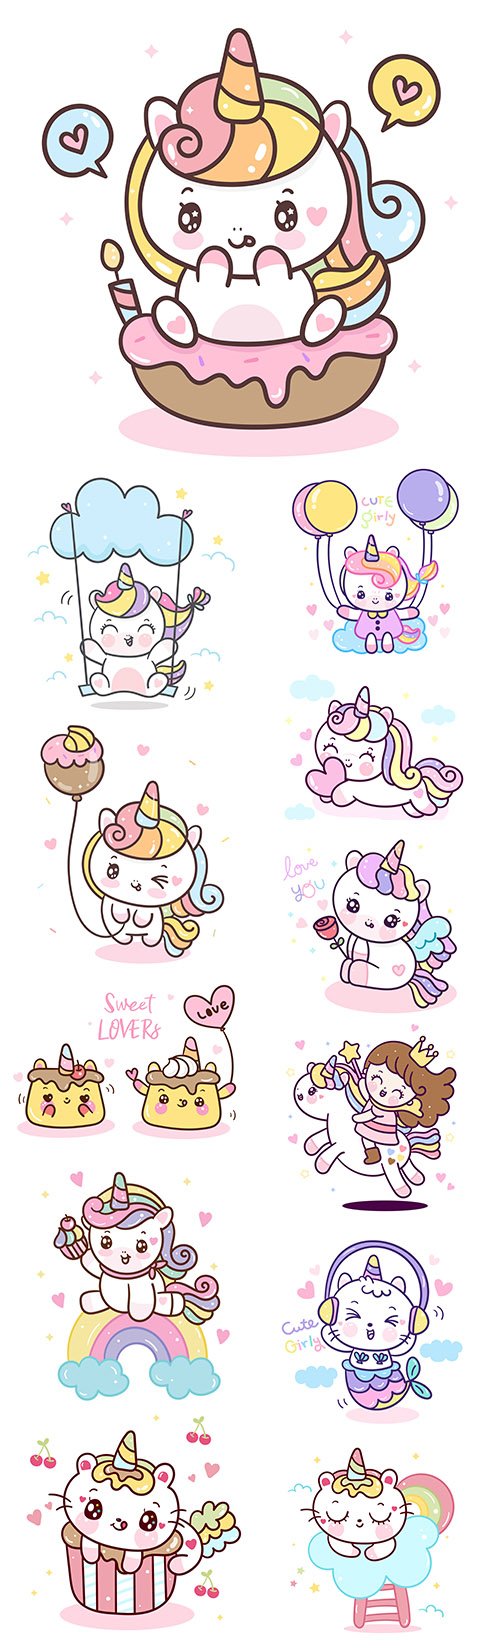 12 Cute Unicorn Cartoon Premium Illustrations Set